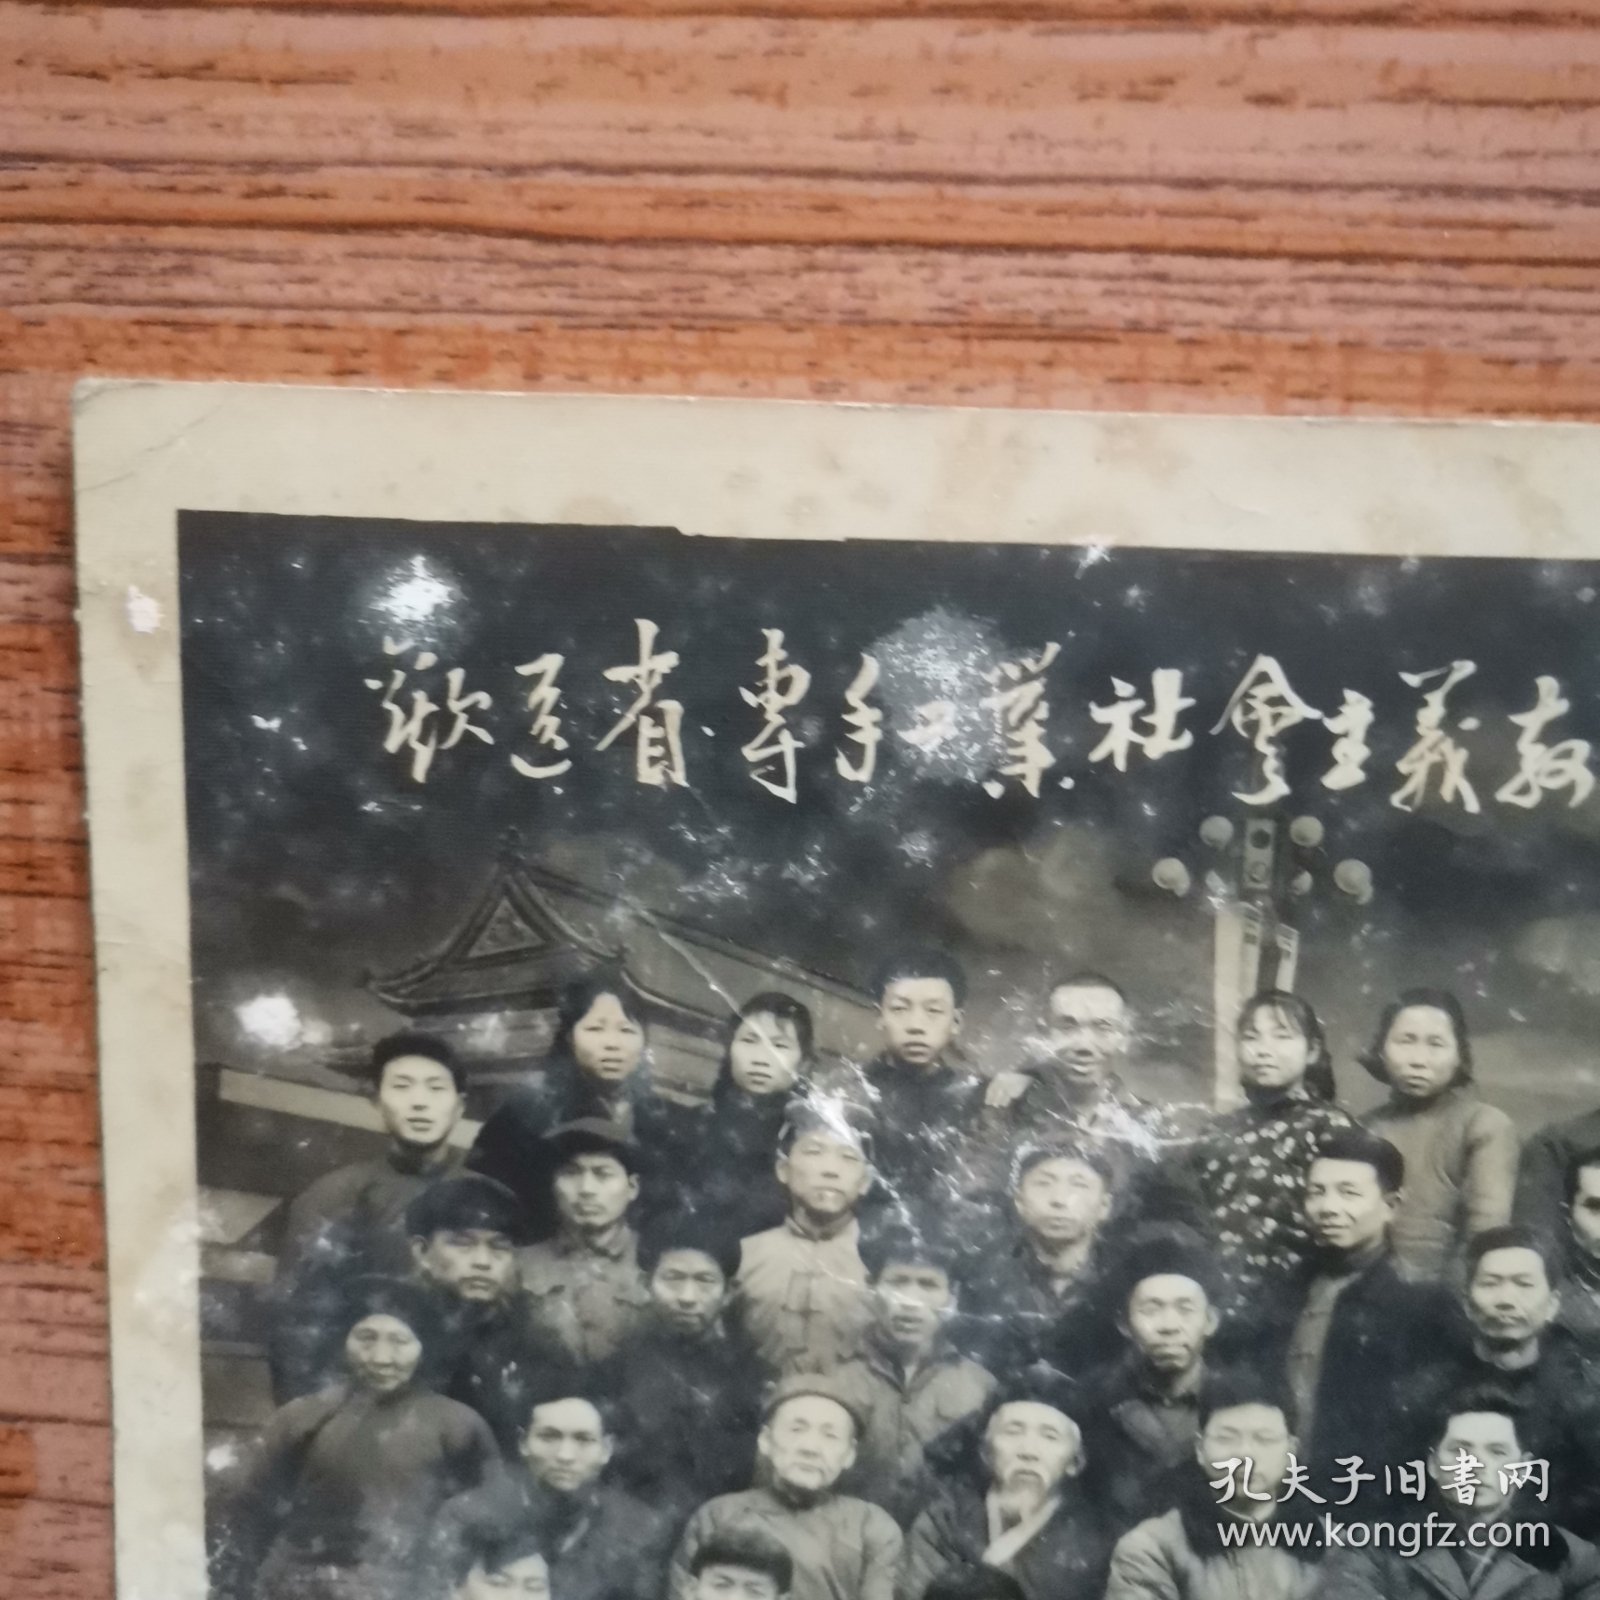 欢送省、专手工业社会主义教育工作组留影（广安县城关五金社，1964年，背后有签字）